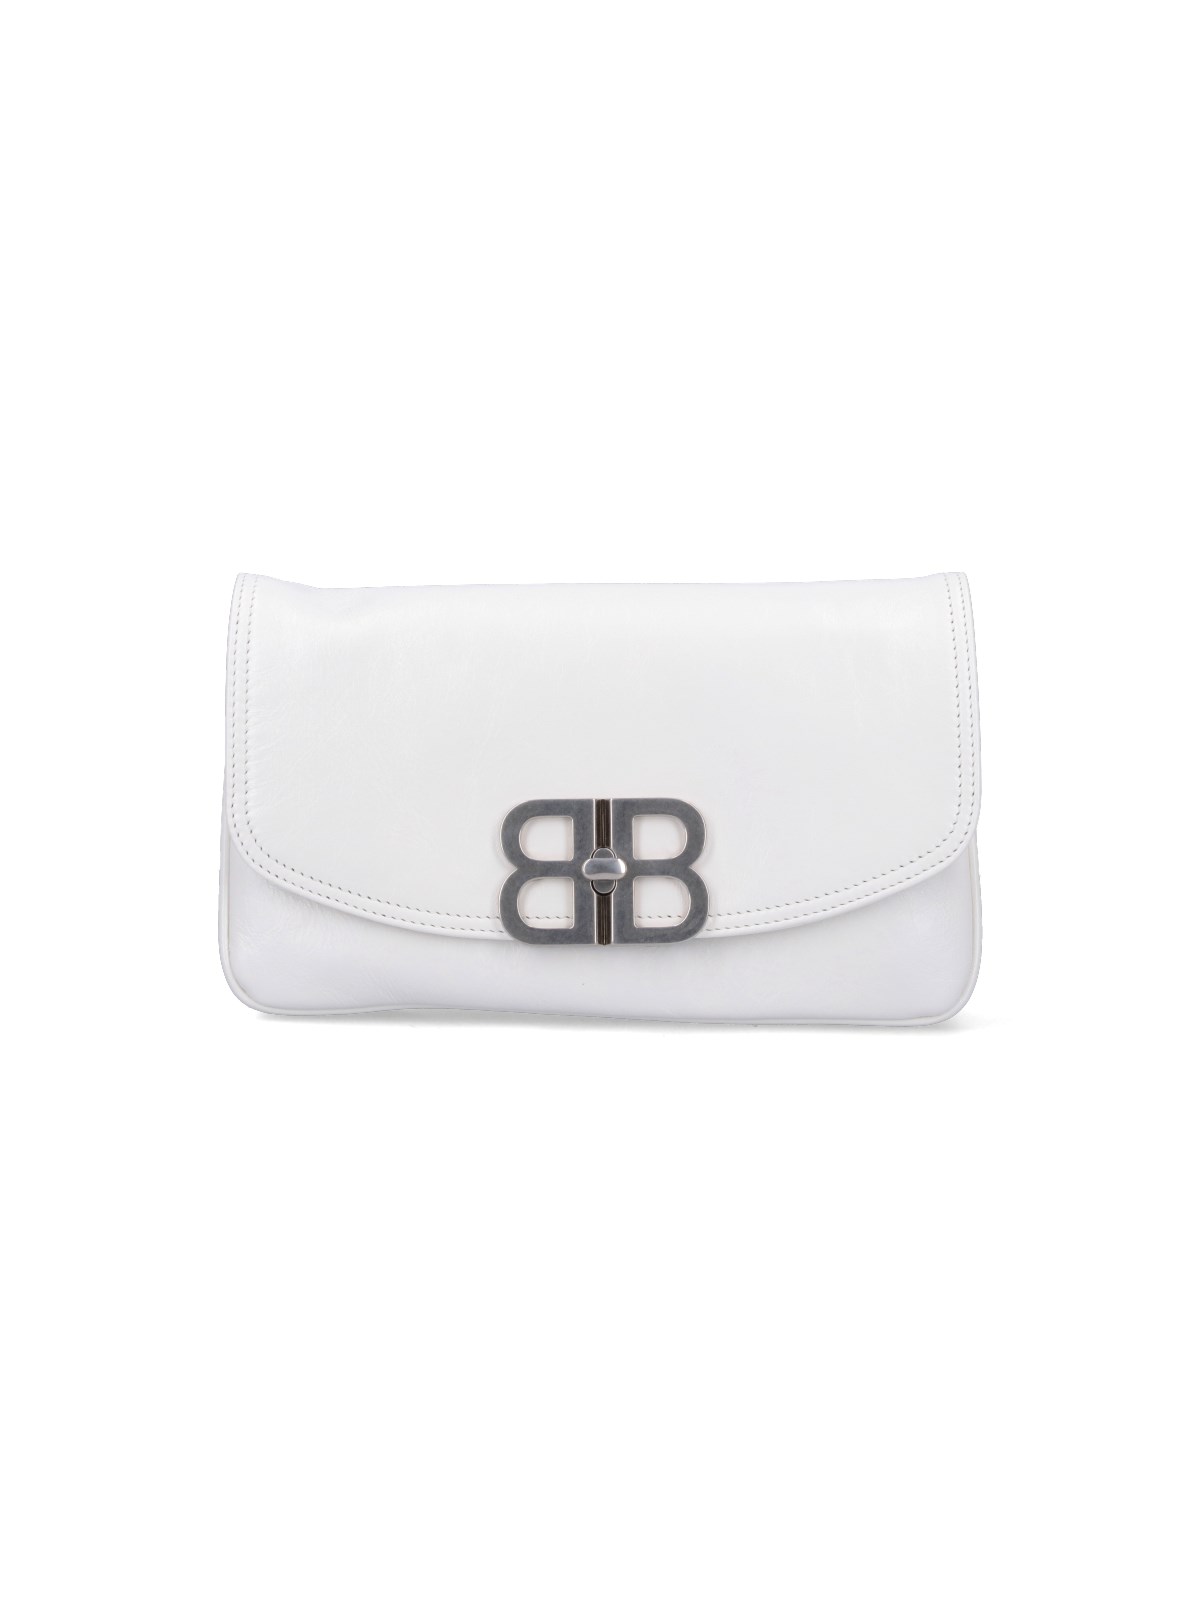 Balenciaga Bb Soft Small Flap Bag In White